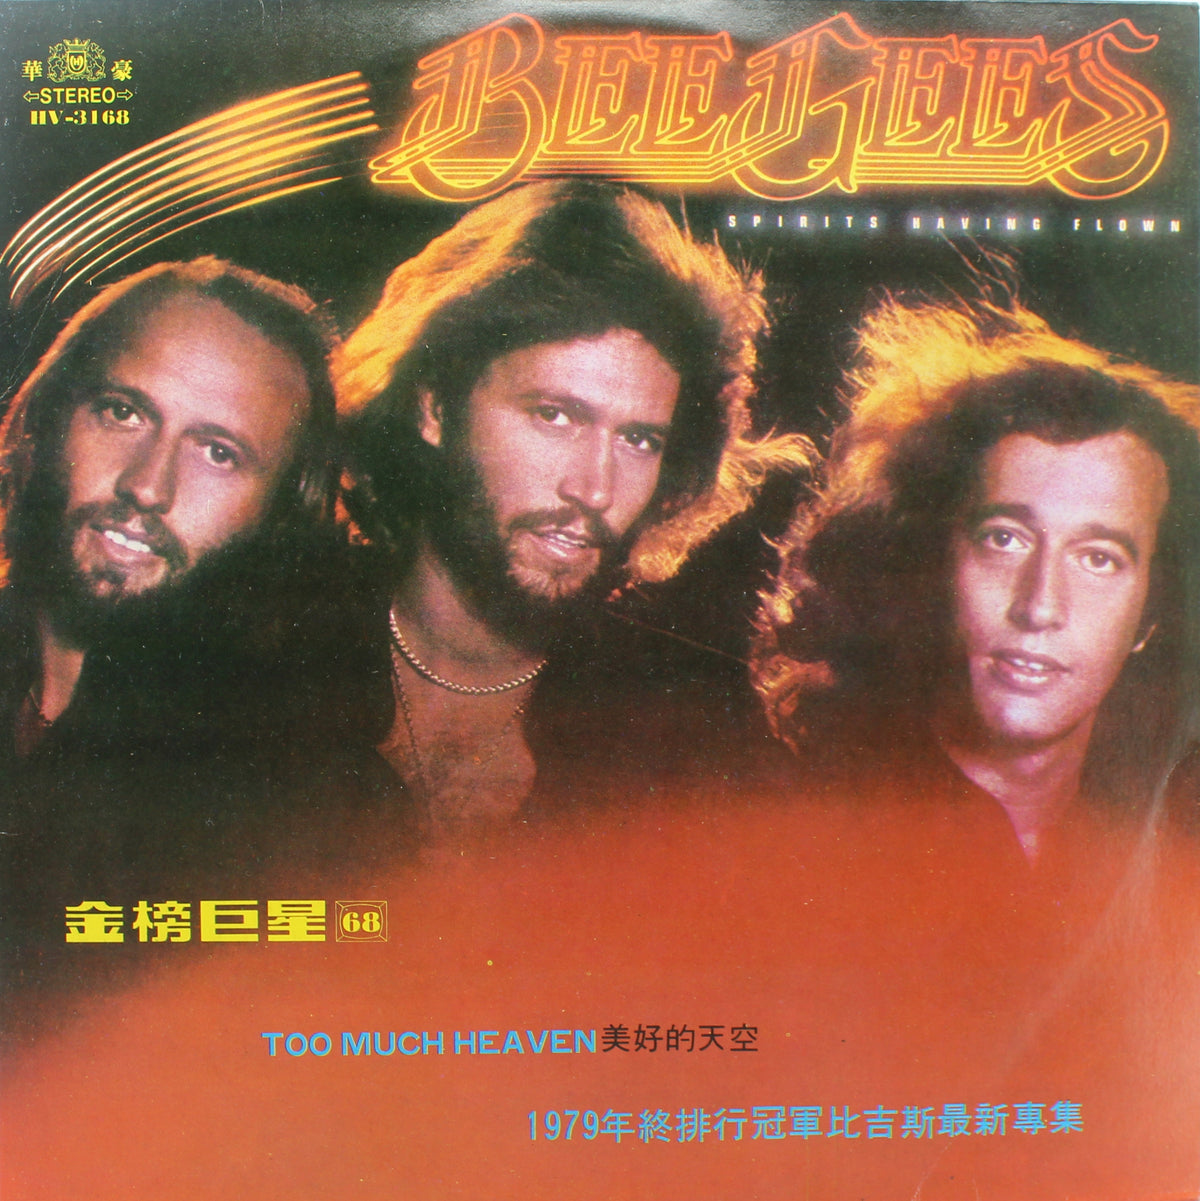 Bee Gees, Spirits Having Flown, Vinyl Album, Taiwan